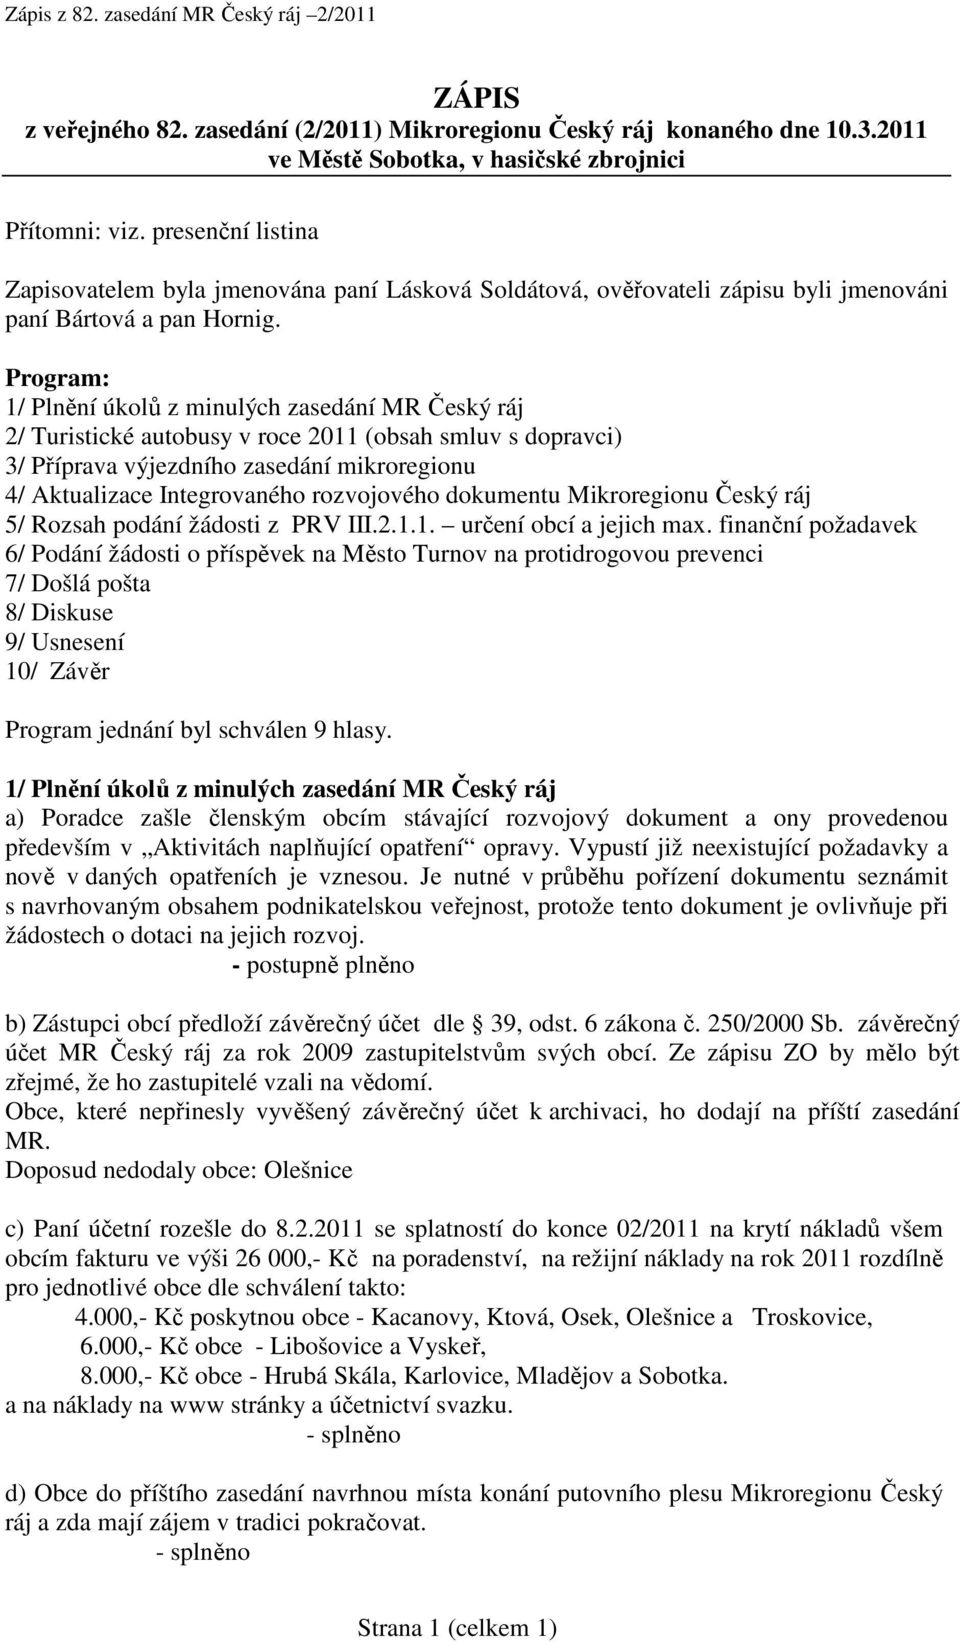 Program: 1/ Plnění úkolů z minulých zasedání MR Český ráj 2/ Turistické autobusy v roce 2011 (obsah smluv s dopravci) 3/ Příprava výjezdního zasedání mikroregionu 4/ Aktualizace Integrovaného